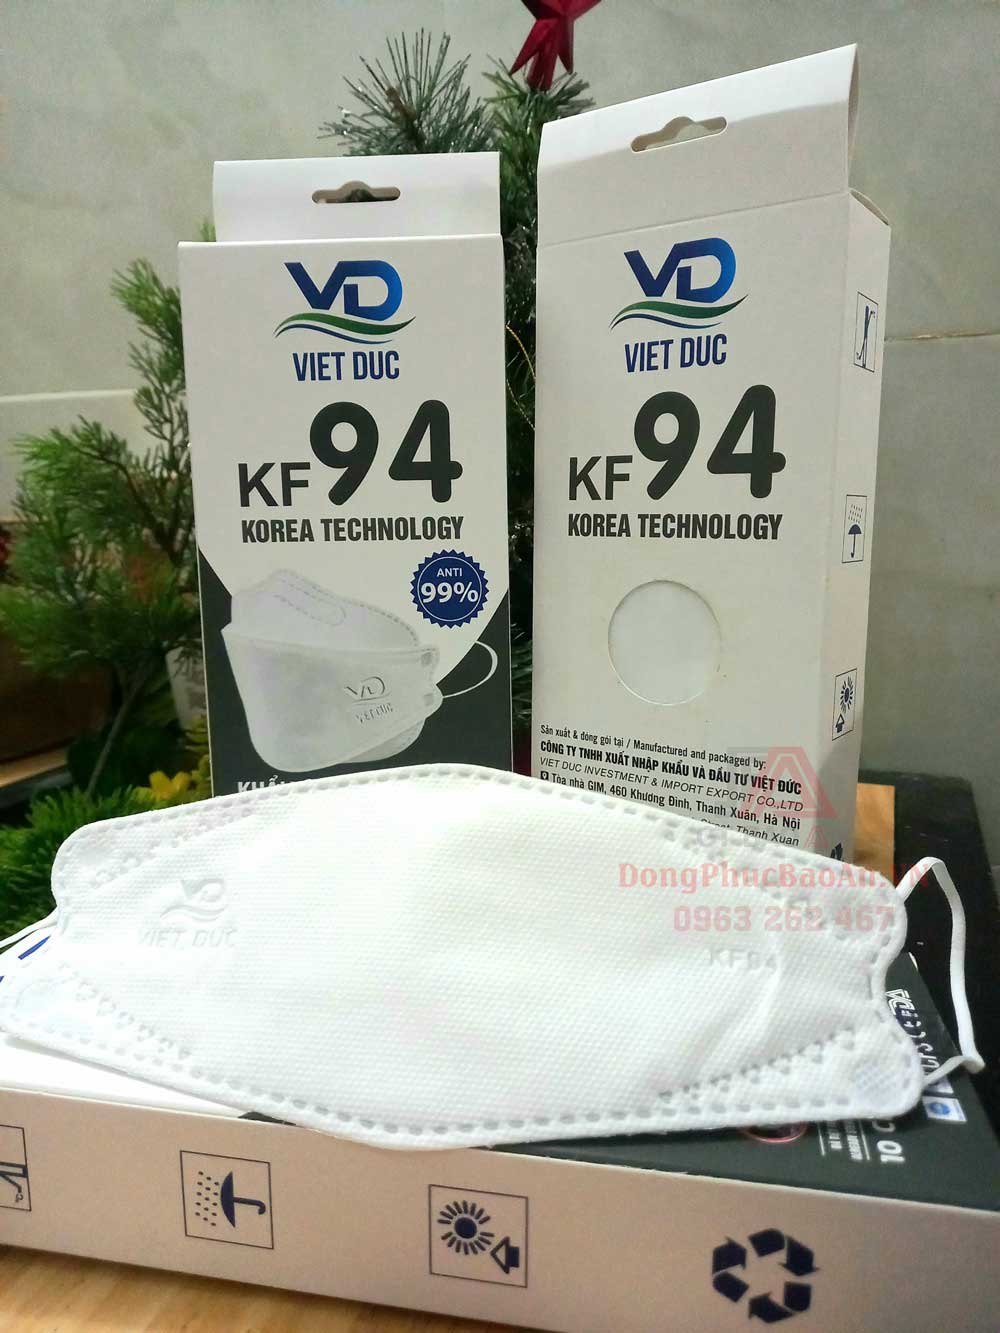 [Hàng chính hãng] Khẩu trang Việt Đức KF94 4 lớp kháng khuẩn mẫu mới nhất - Phân phối sỉ lẻ, giá tốt TPHCM